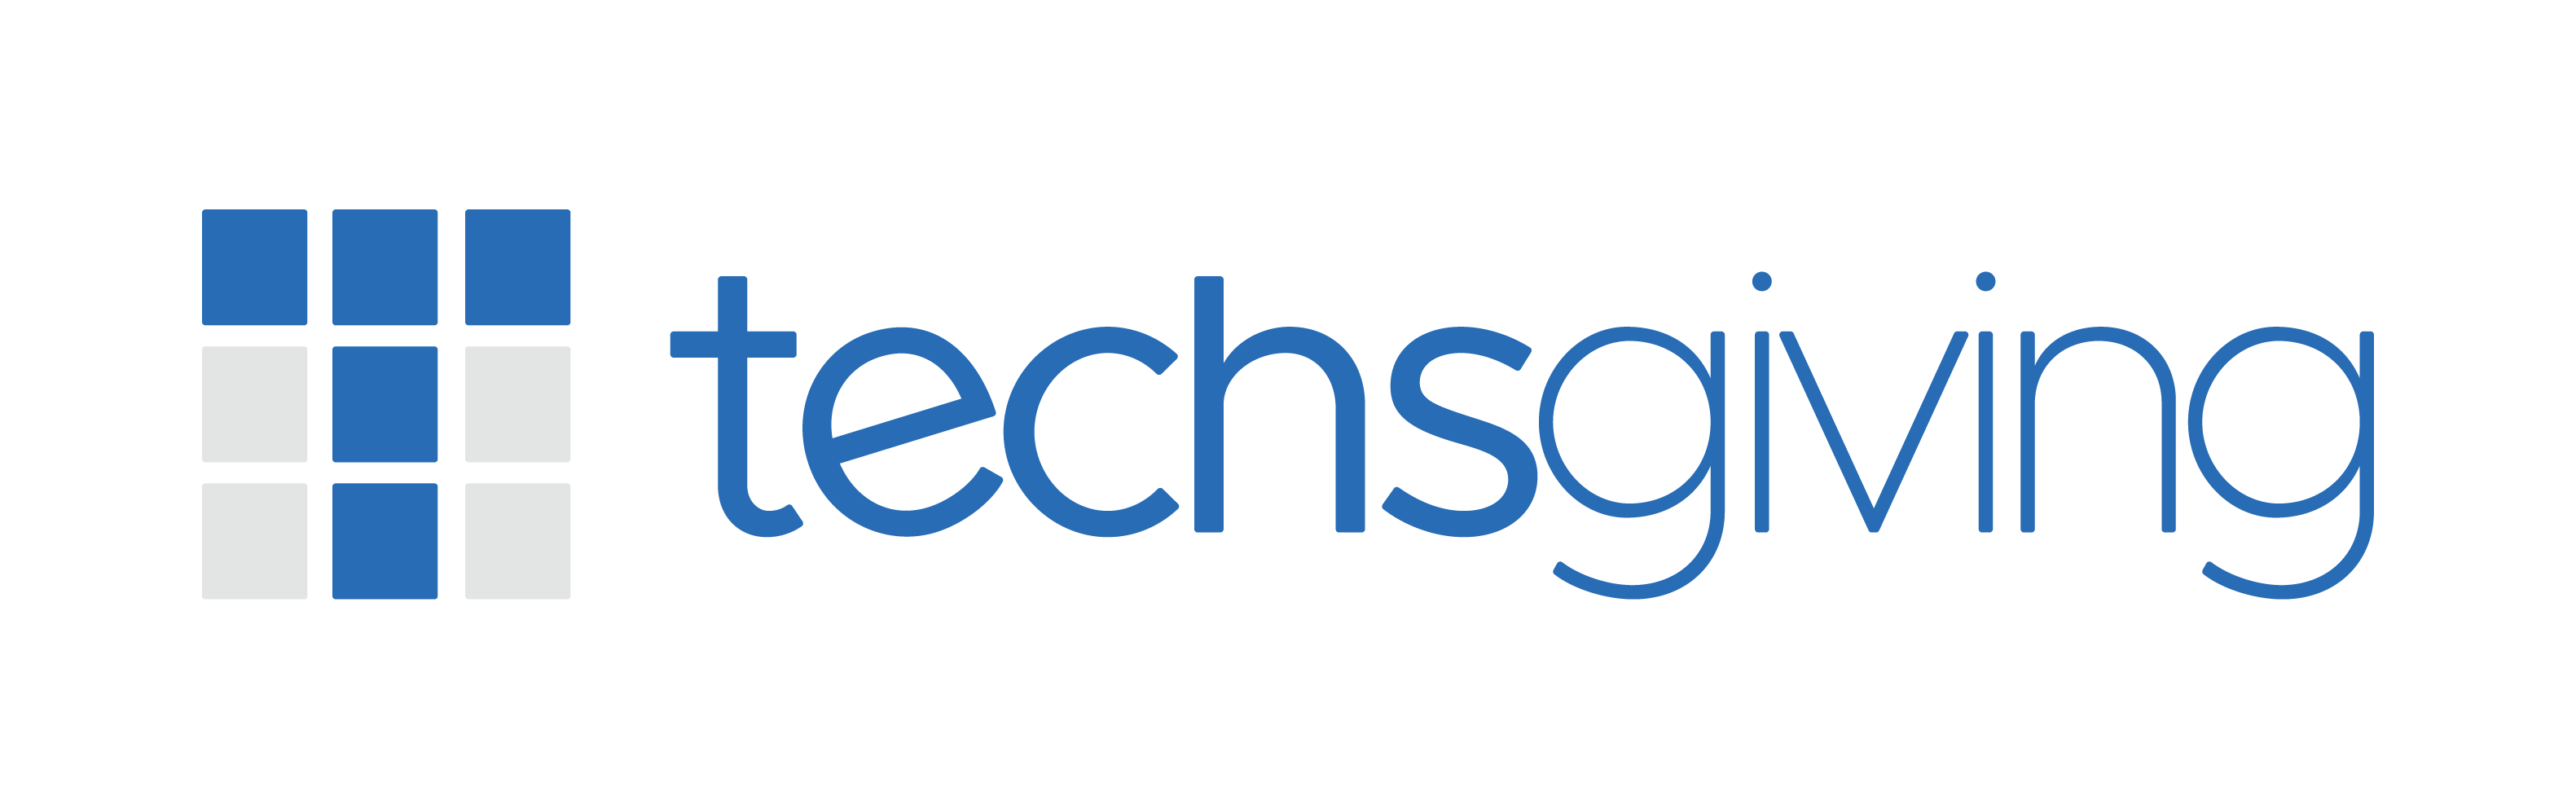 Techsgiving Logo